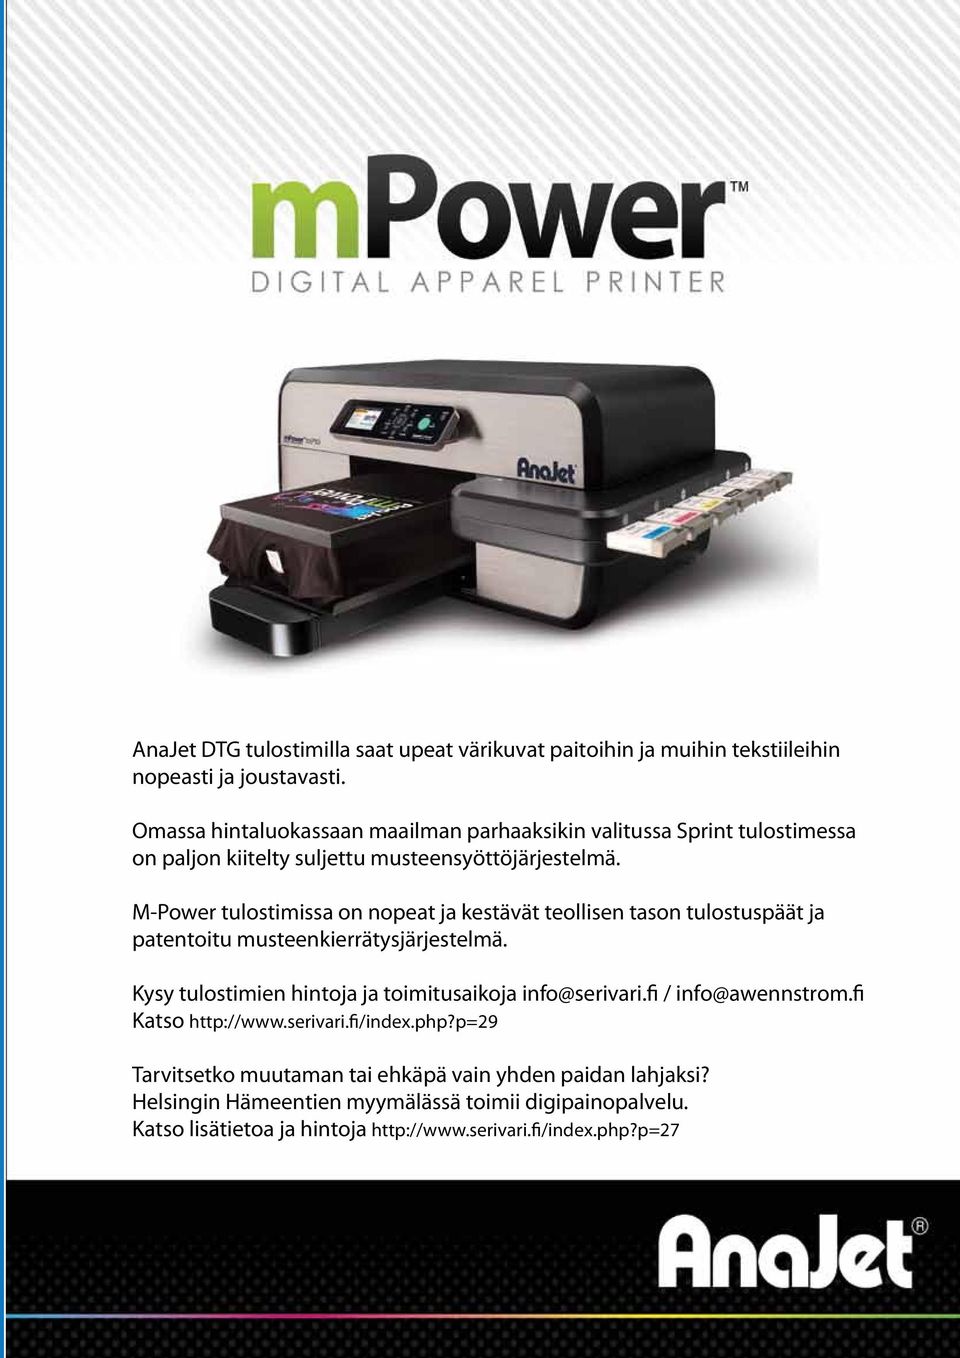 M-Power tulostimissa on nopeat ja kestävät teollisen tason tulostuspäät ja patentoitu musteenkierrätysjärjestelmä.